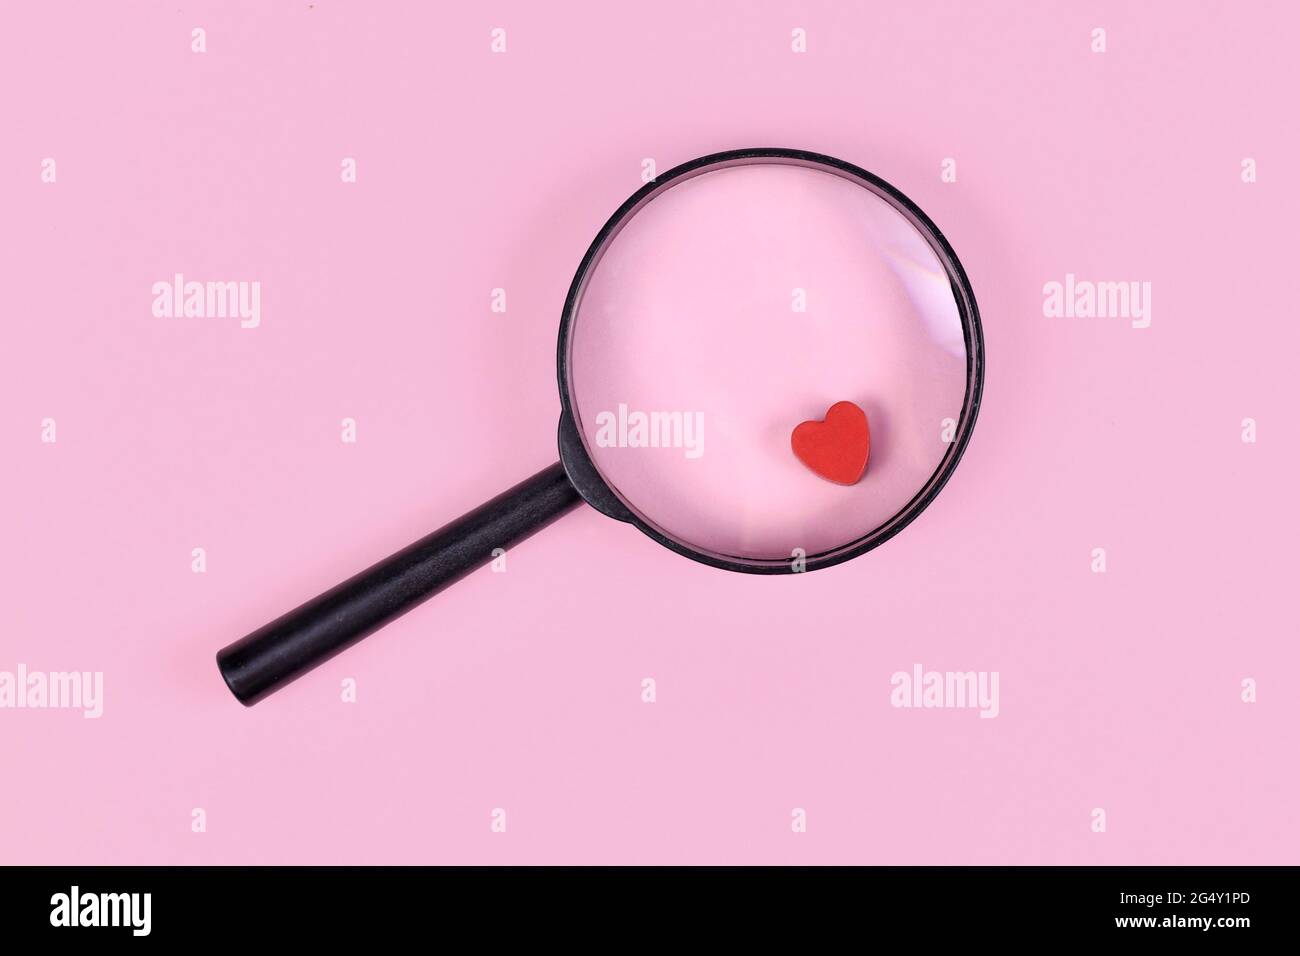 Konzept zur Liebesfindung mit Lupenglas und rotem Herz-Symbol auf rosa Hintergrund Stockfoto